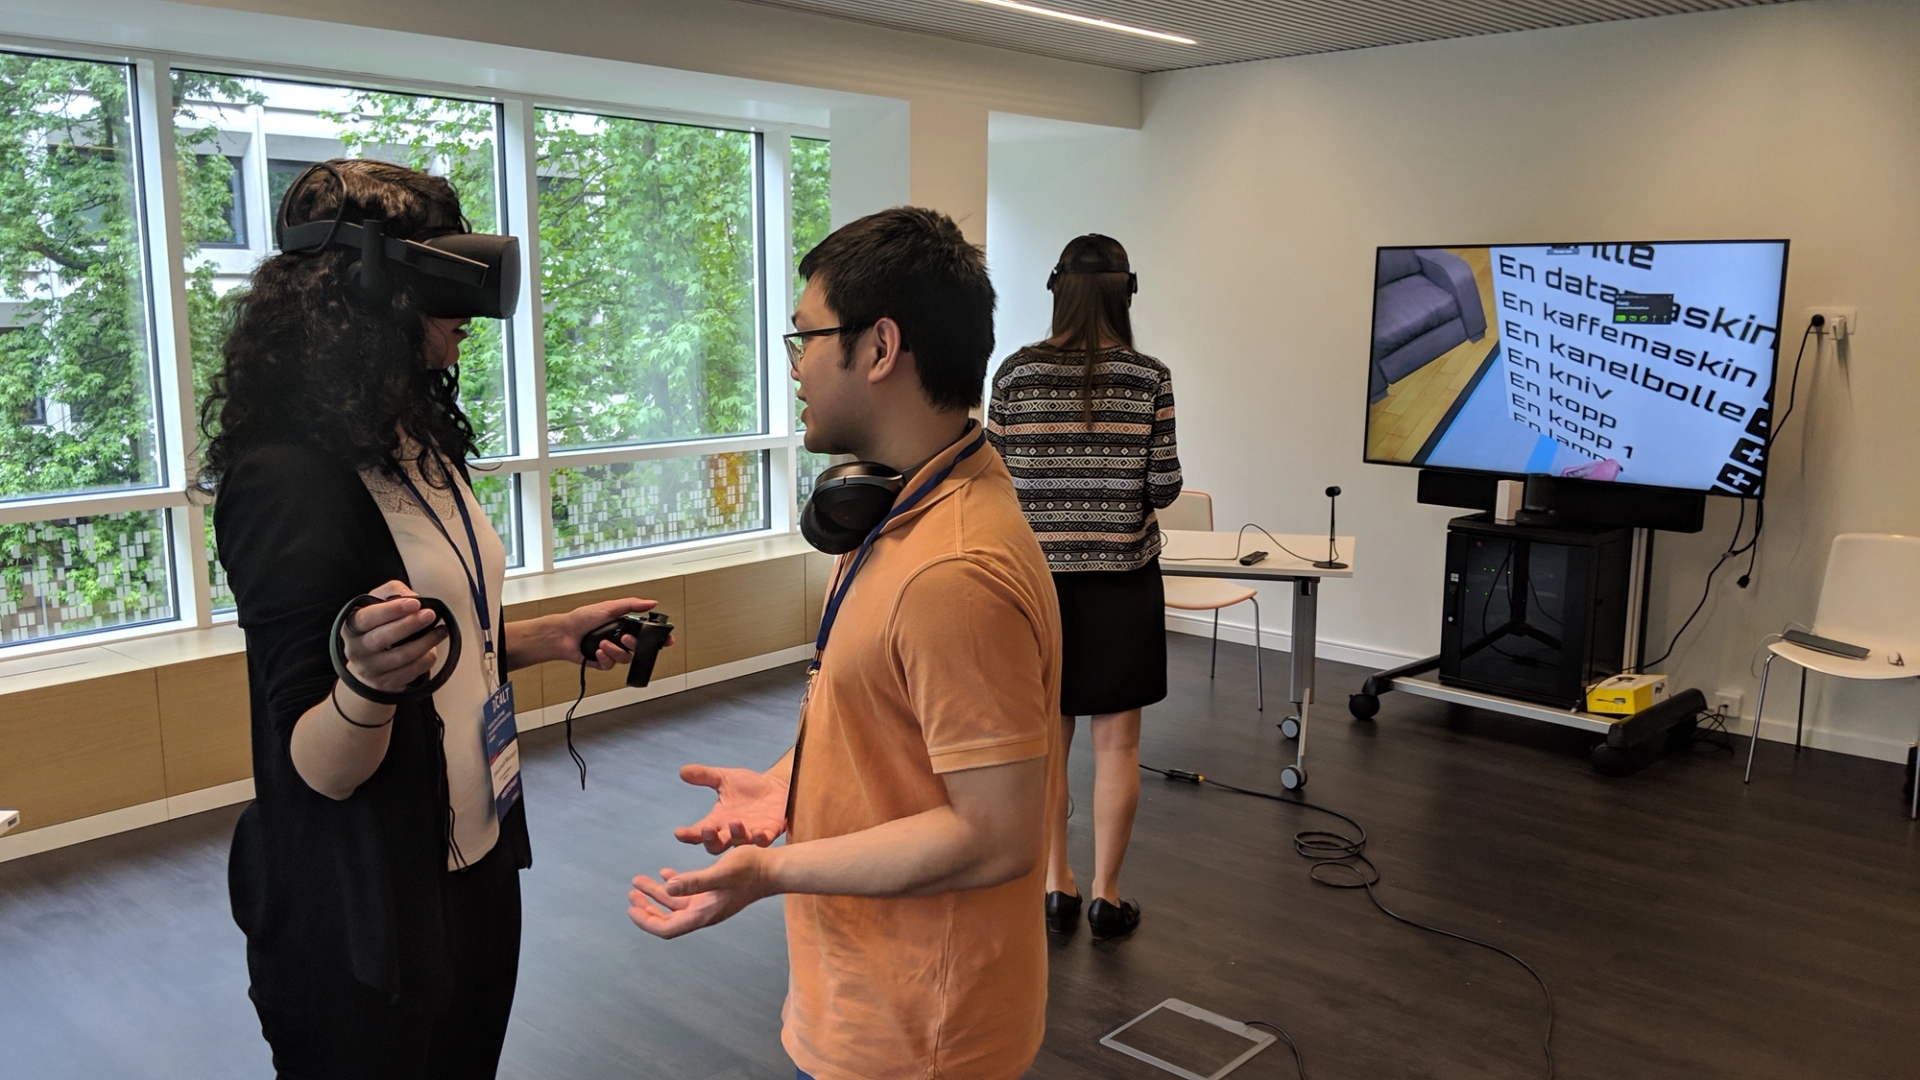 Kvinner prøver VR-briller mens en mann forklarer mens en mann snakker med henne. Bak ser man en annen kvinne med VR-briller og en TV-skjerm.